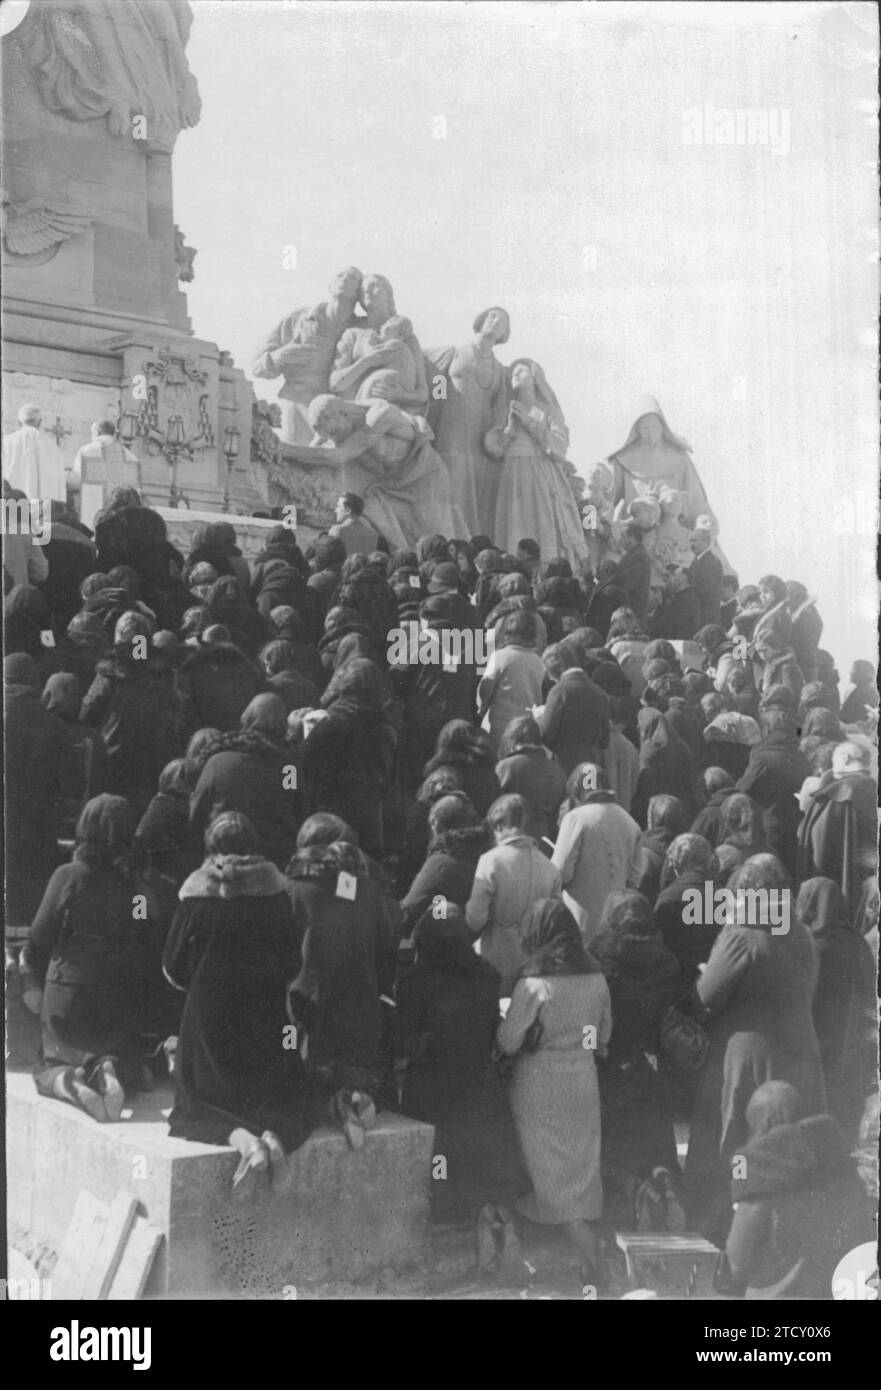 04/19/1932. Messa di comunione davanti al monumento al sacro cuore di Gesù. La presenza era molto numerosa. Crediti: Album / Archivo ABC / José Díaz Casariego Foto Stock